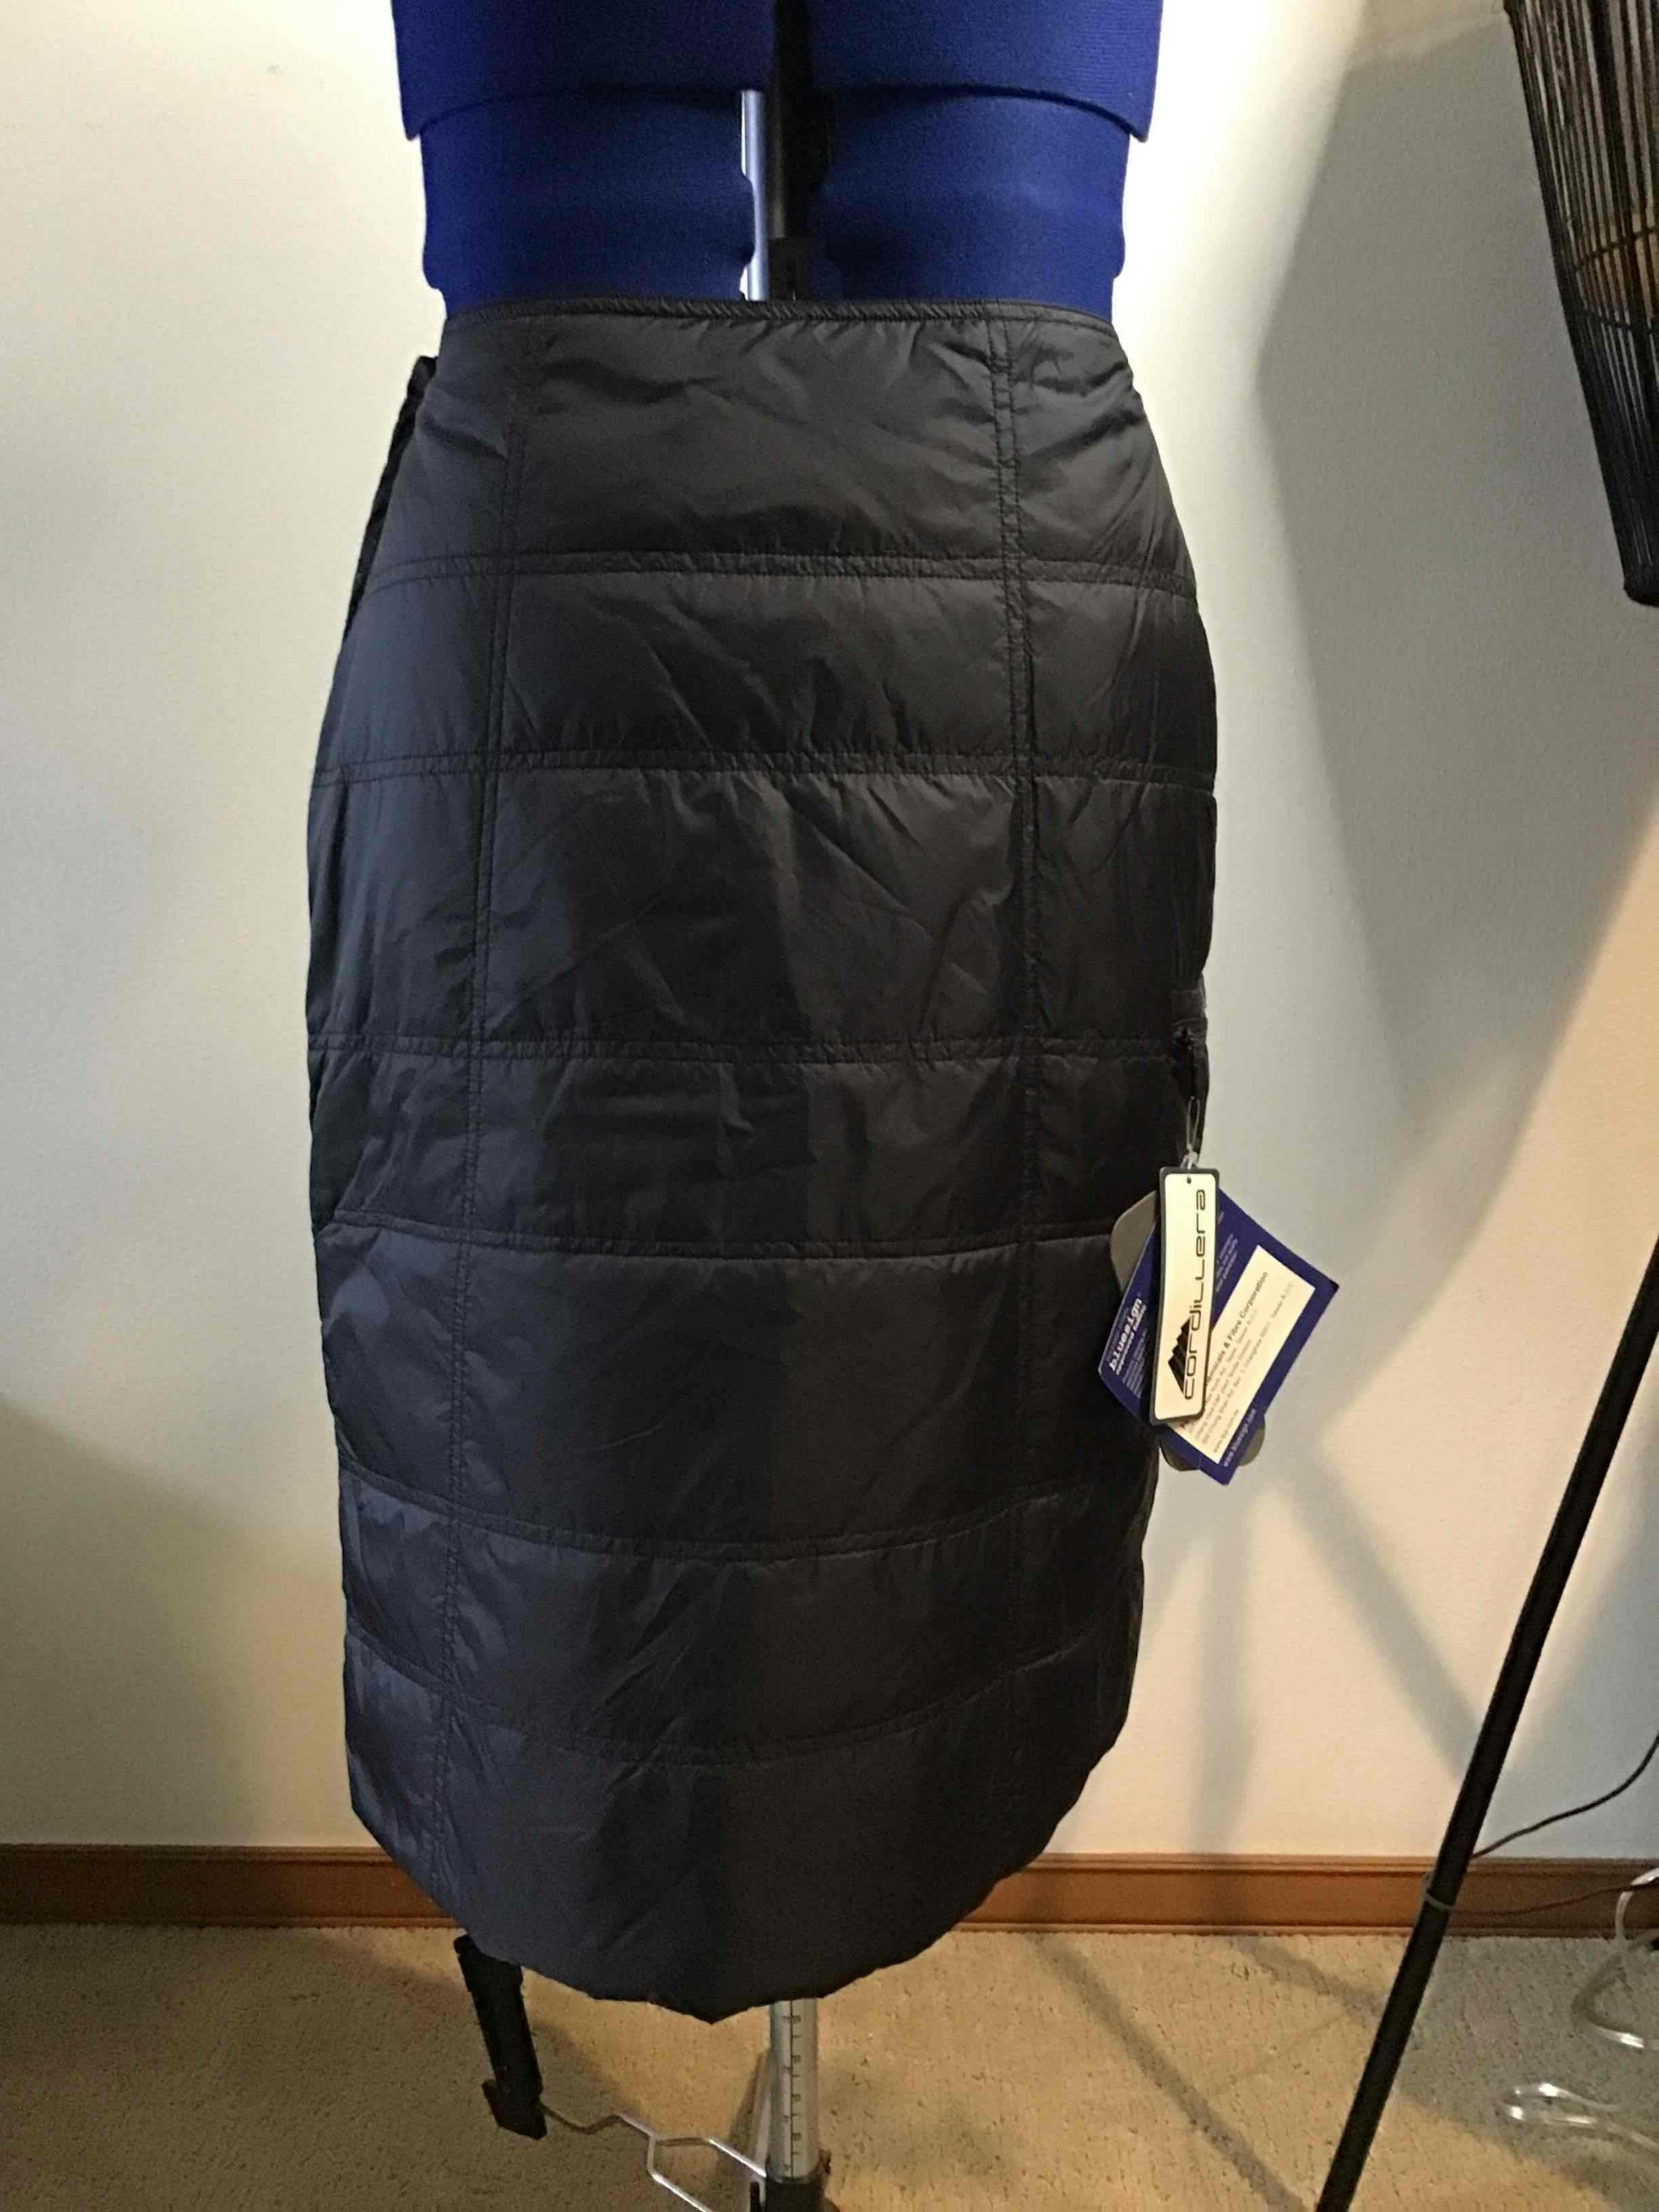 Cordillera Chamonix Insulated Skirt - Women's M